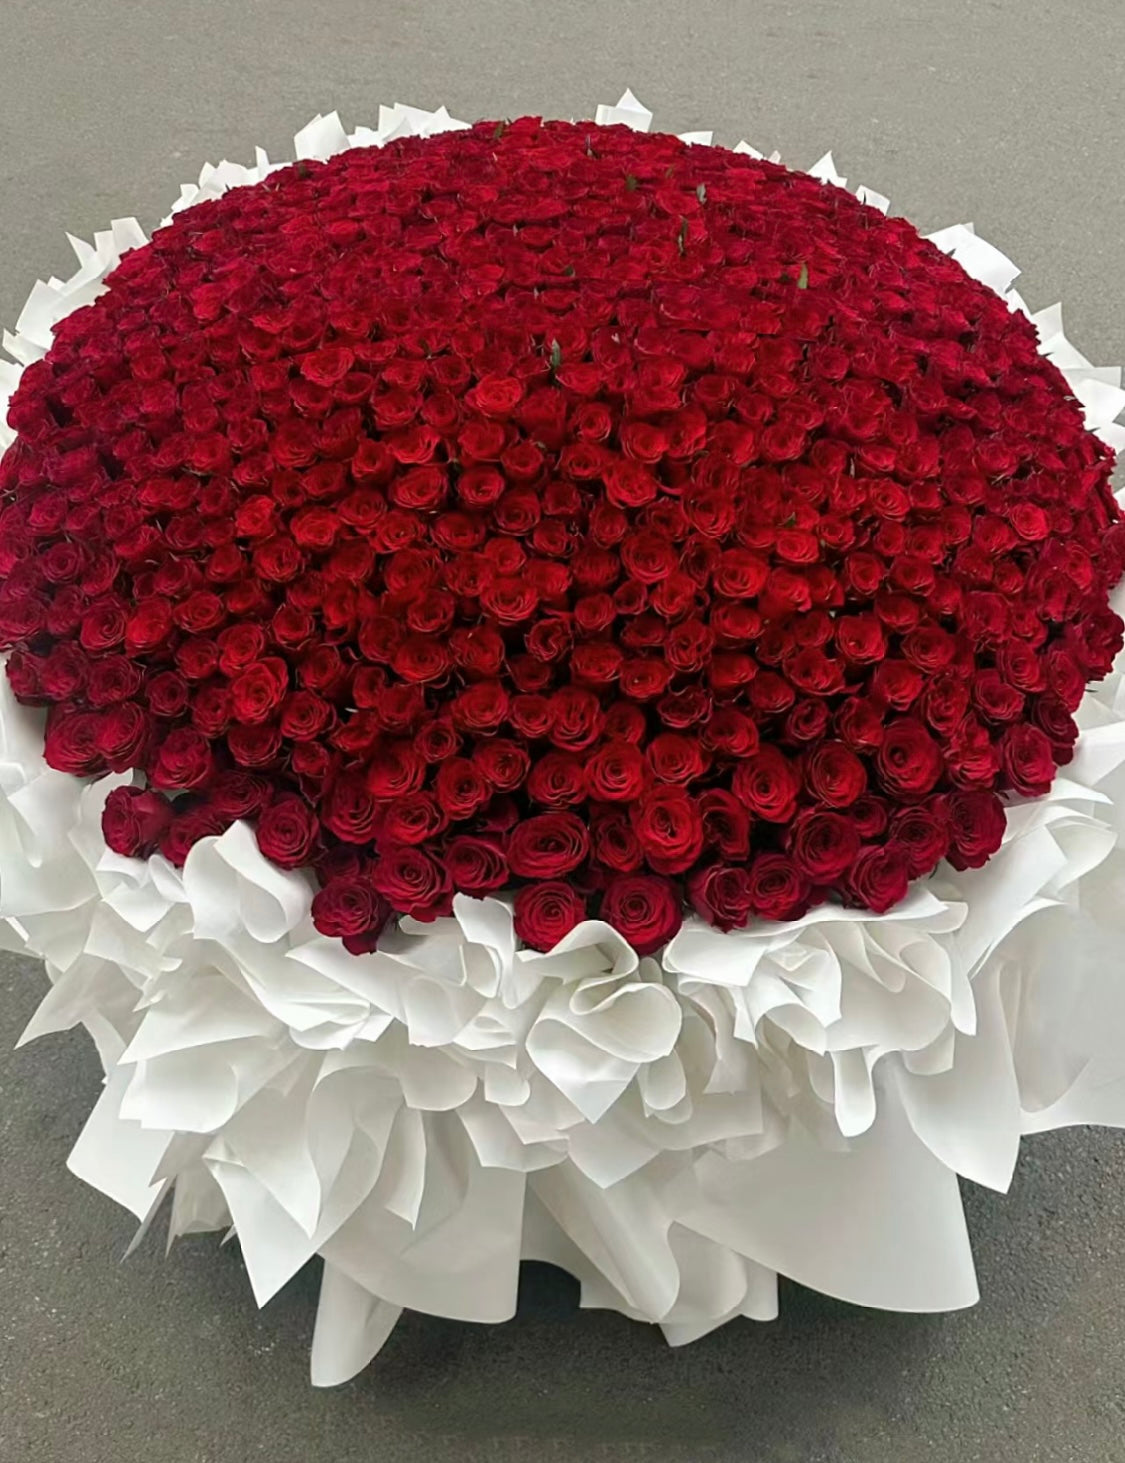 999枝經典紅玫瑰花束